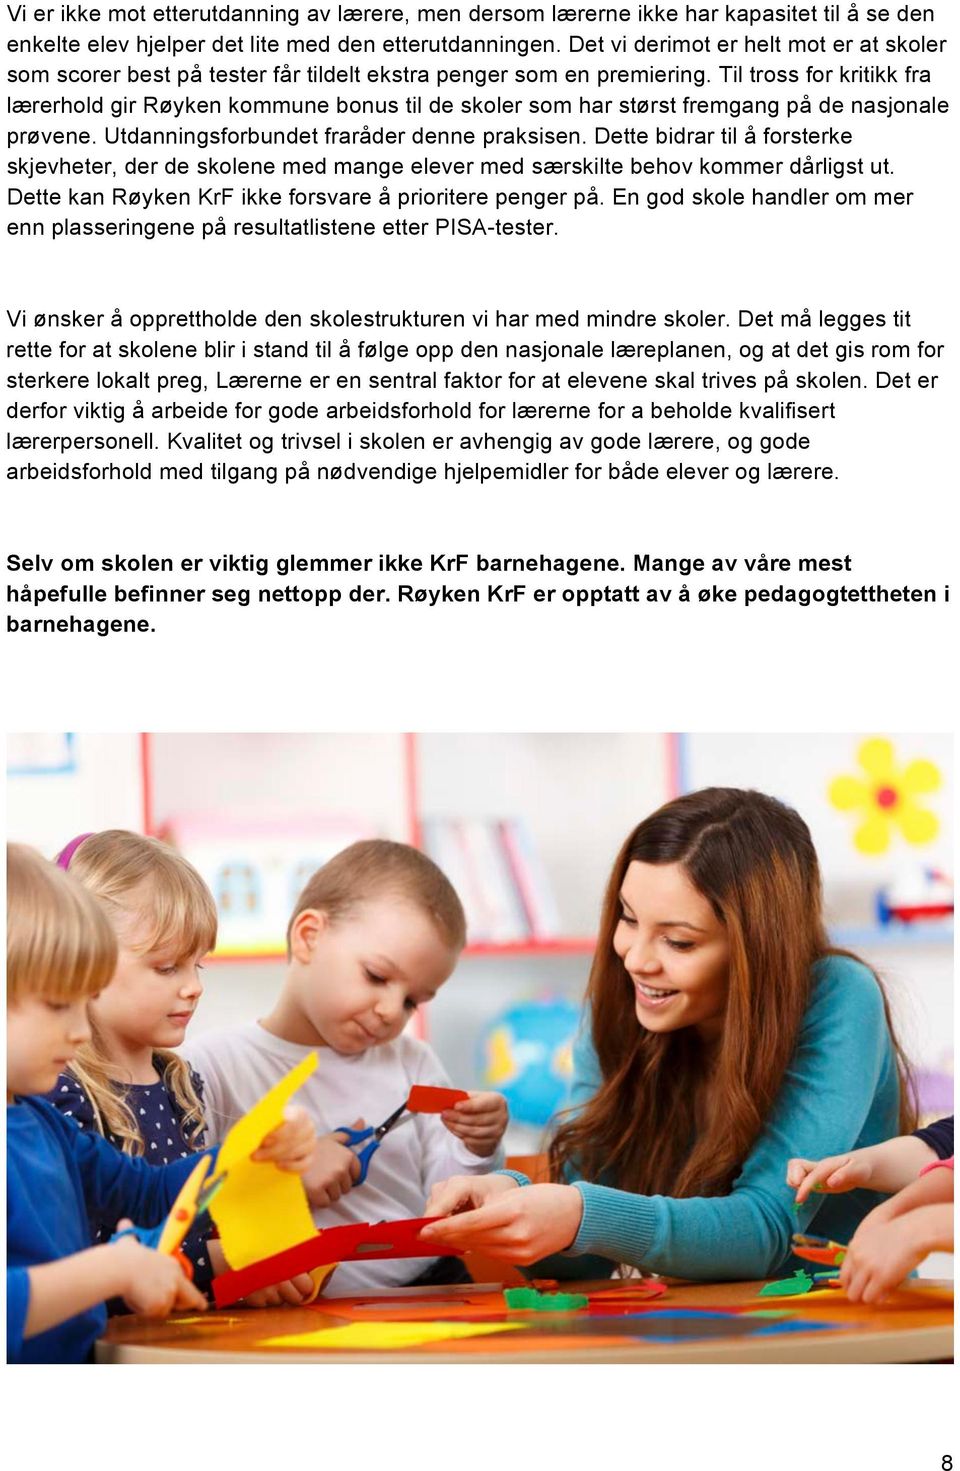 Til tross for kritikk fra lærerhold gir Røyken kommune bonus til de skoler som har størst fremgang på de nasjonale prøvene. Utdanningsforbundet fraråder denne praksisen.